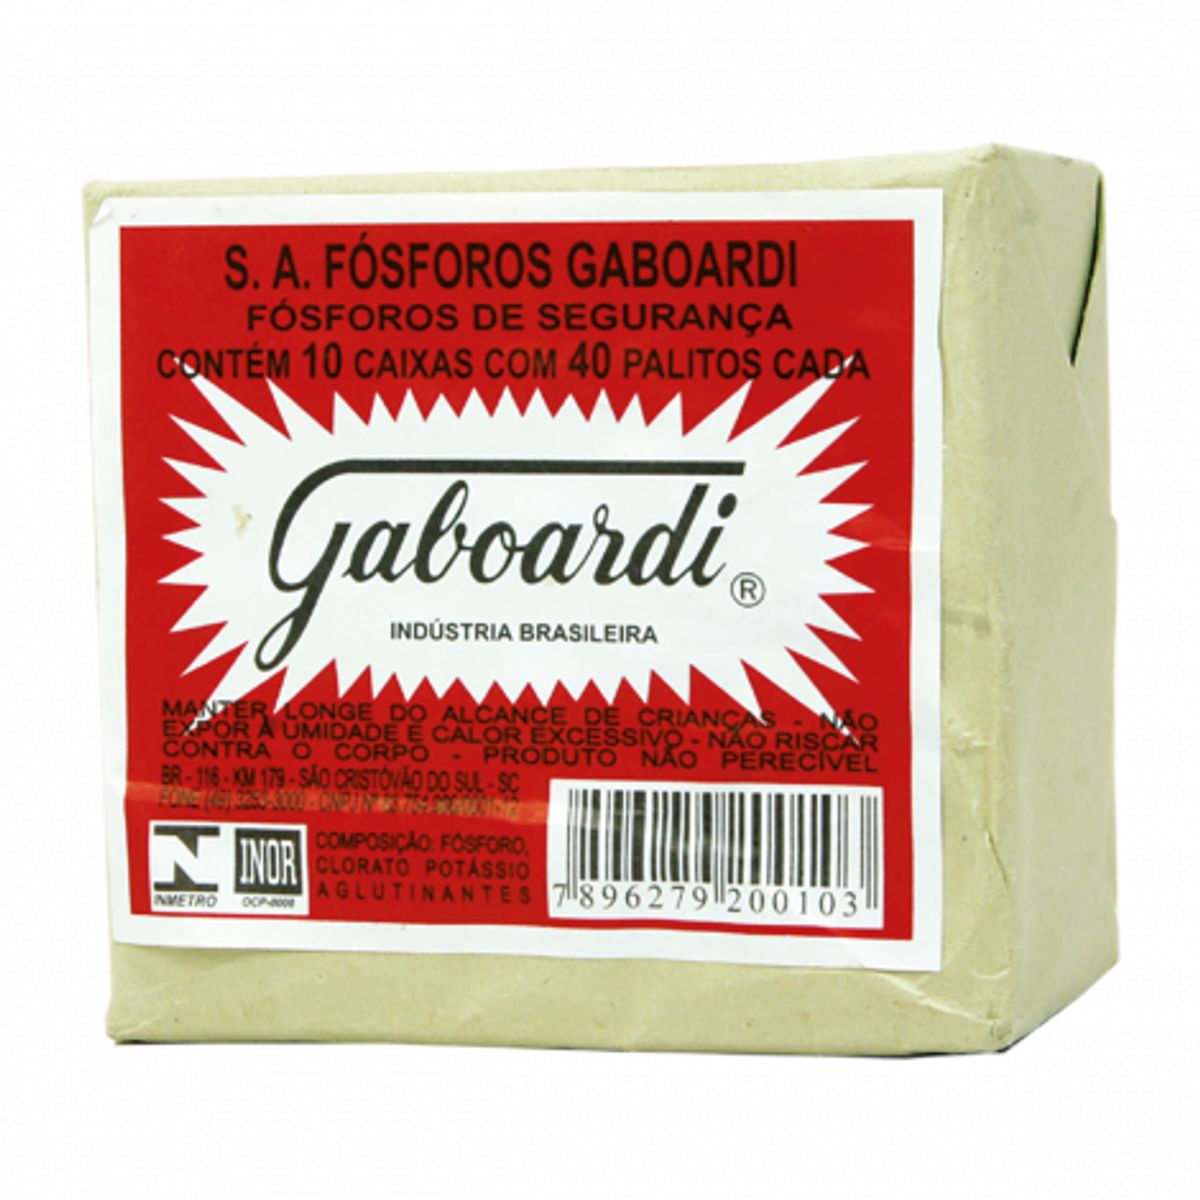 Fósforo Gaboardi Contém 10 Caixas com 40 Unidades